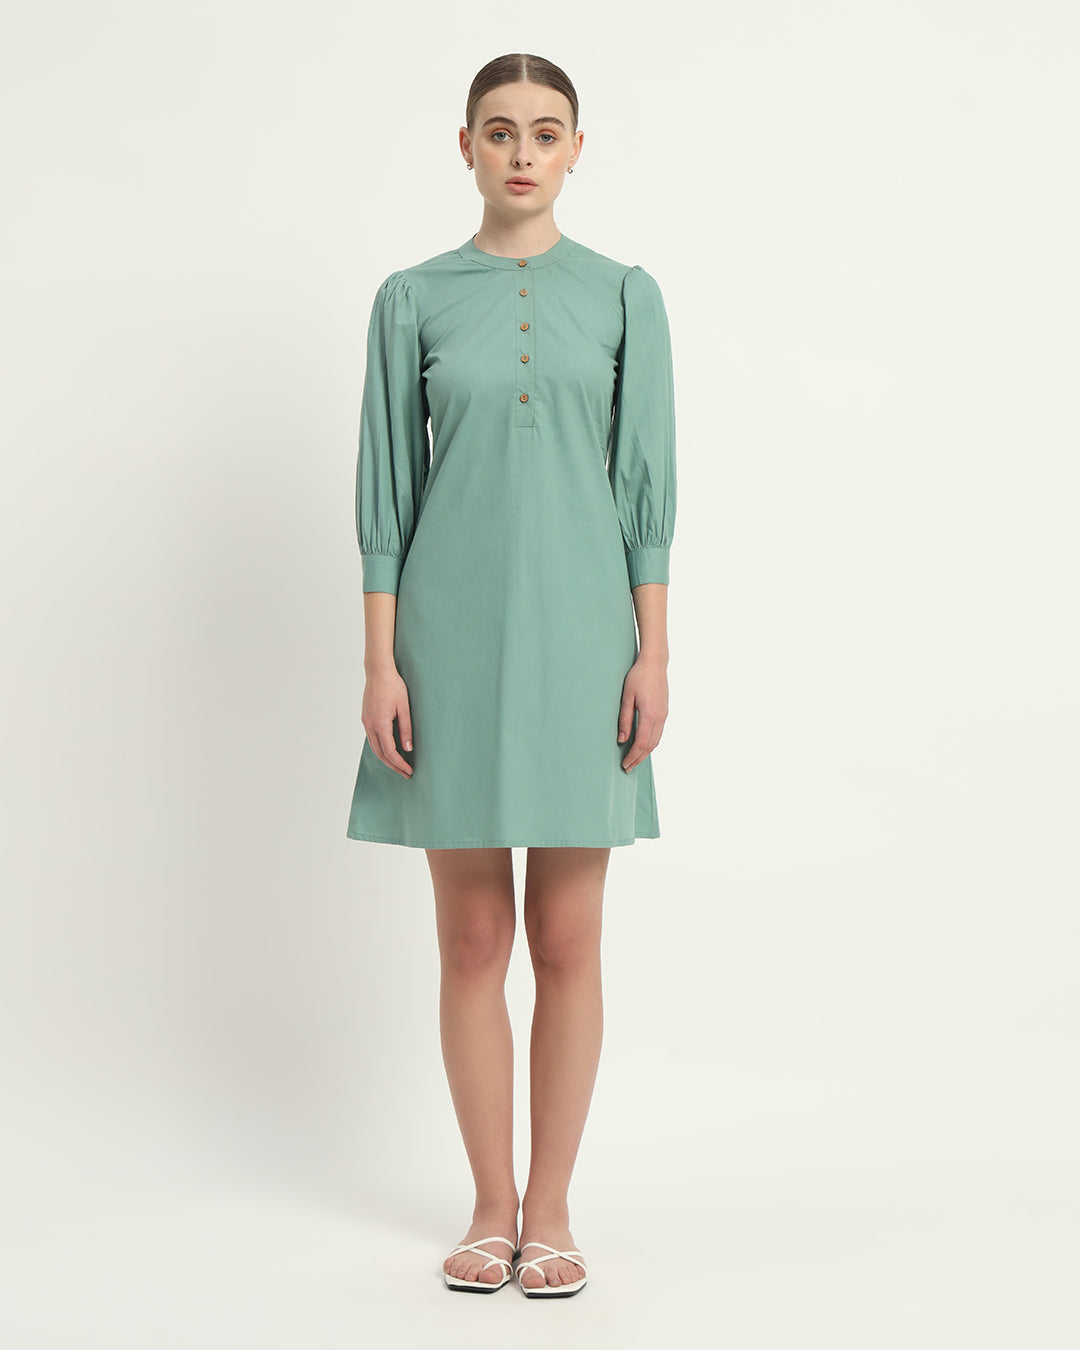 The Mint Roslyn Cotton Dress